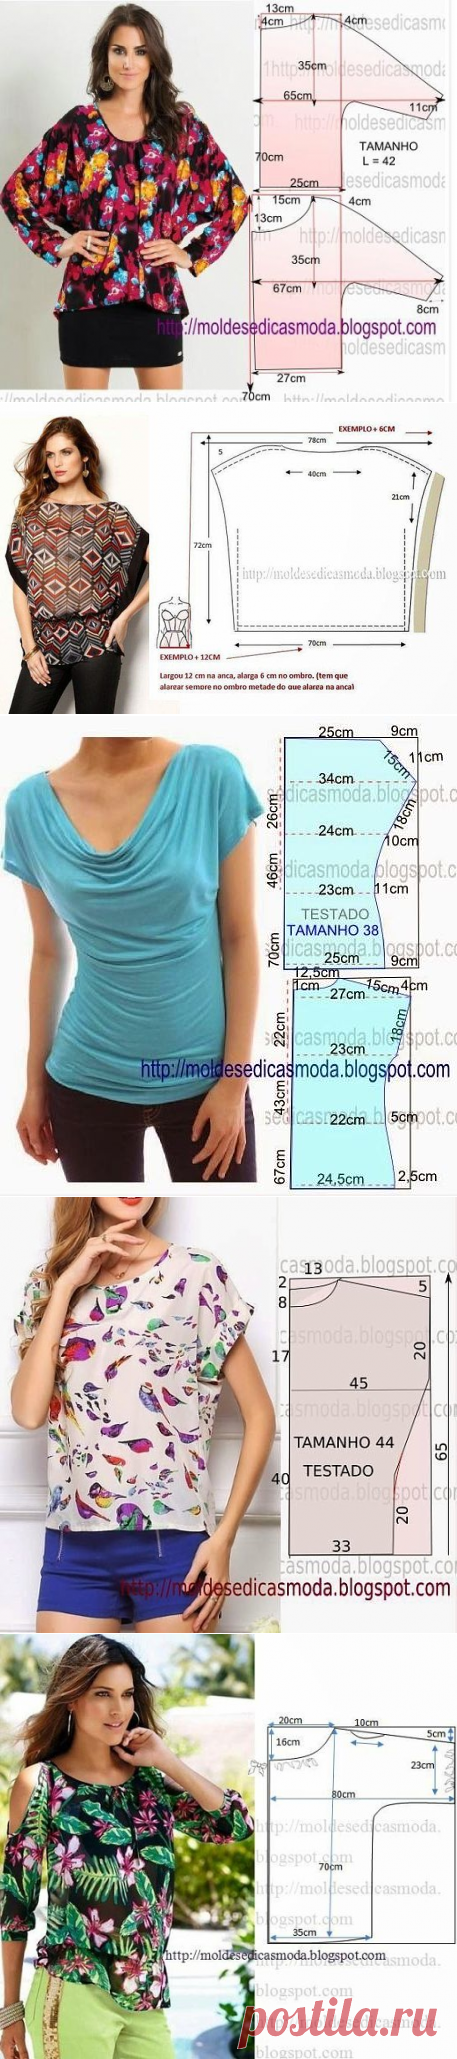 Простые выкройки блузок (Шитье и крой) | Журнал Вдохновение Рукодельницы